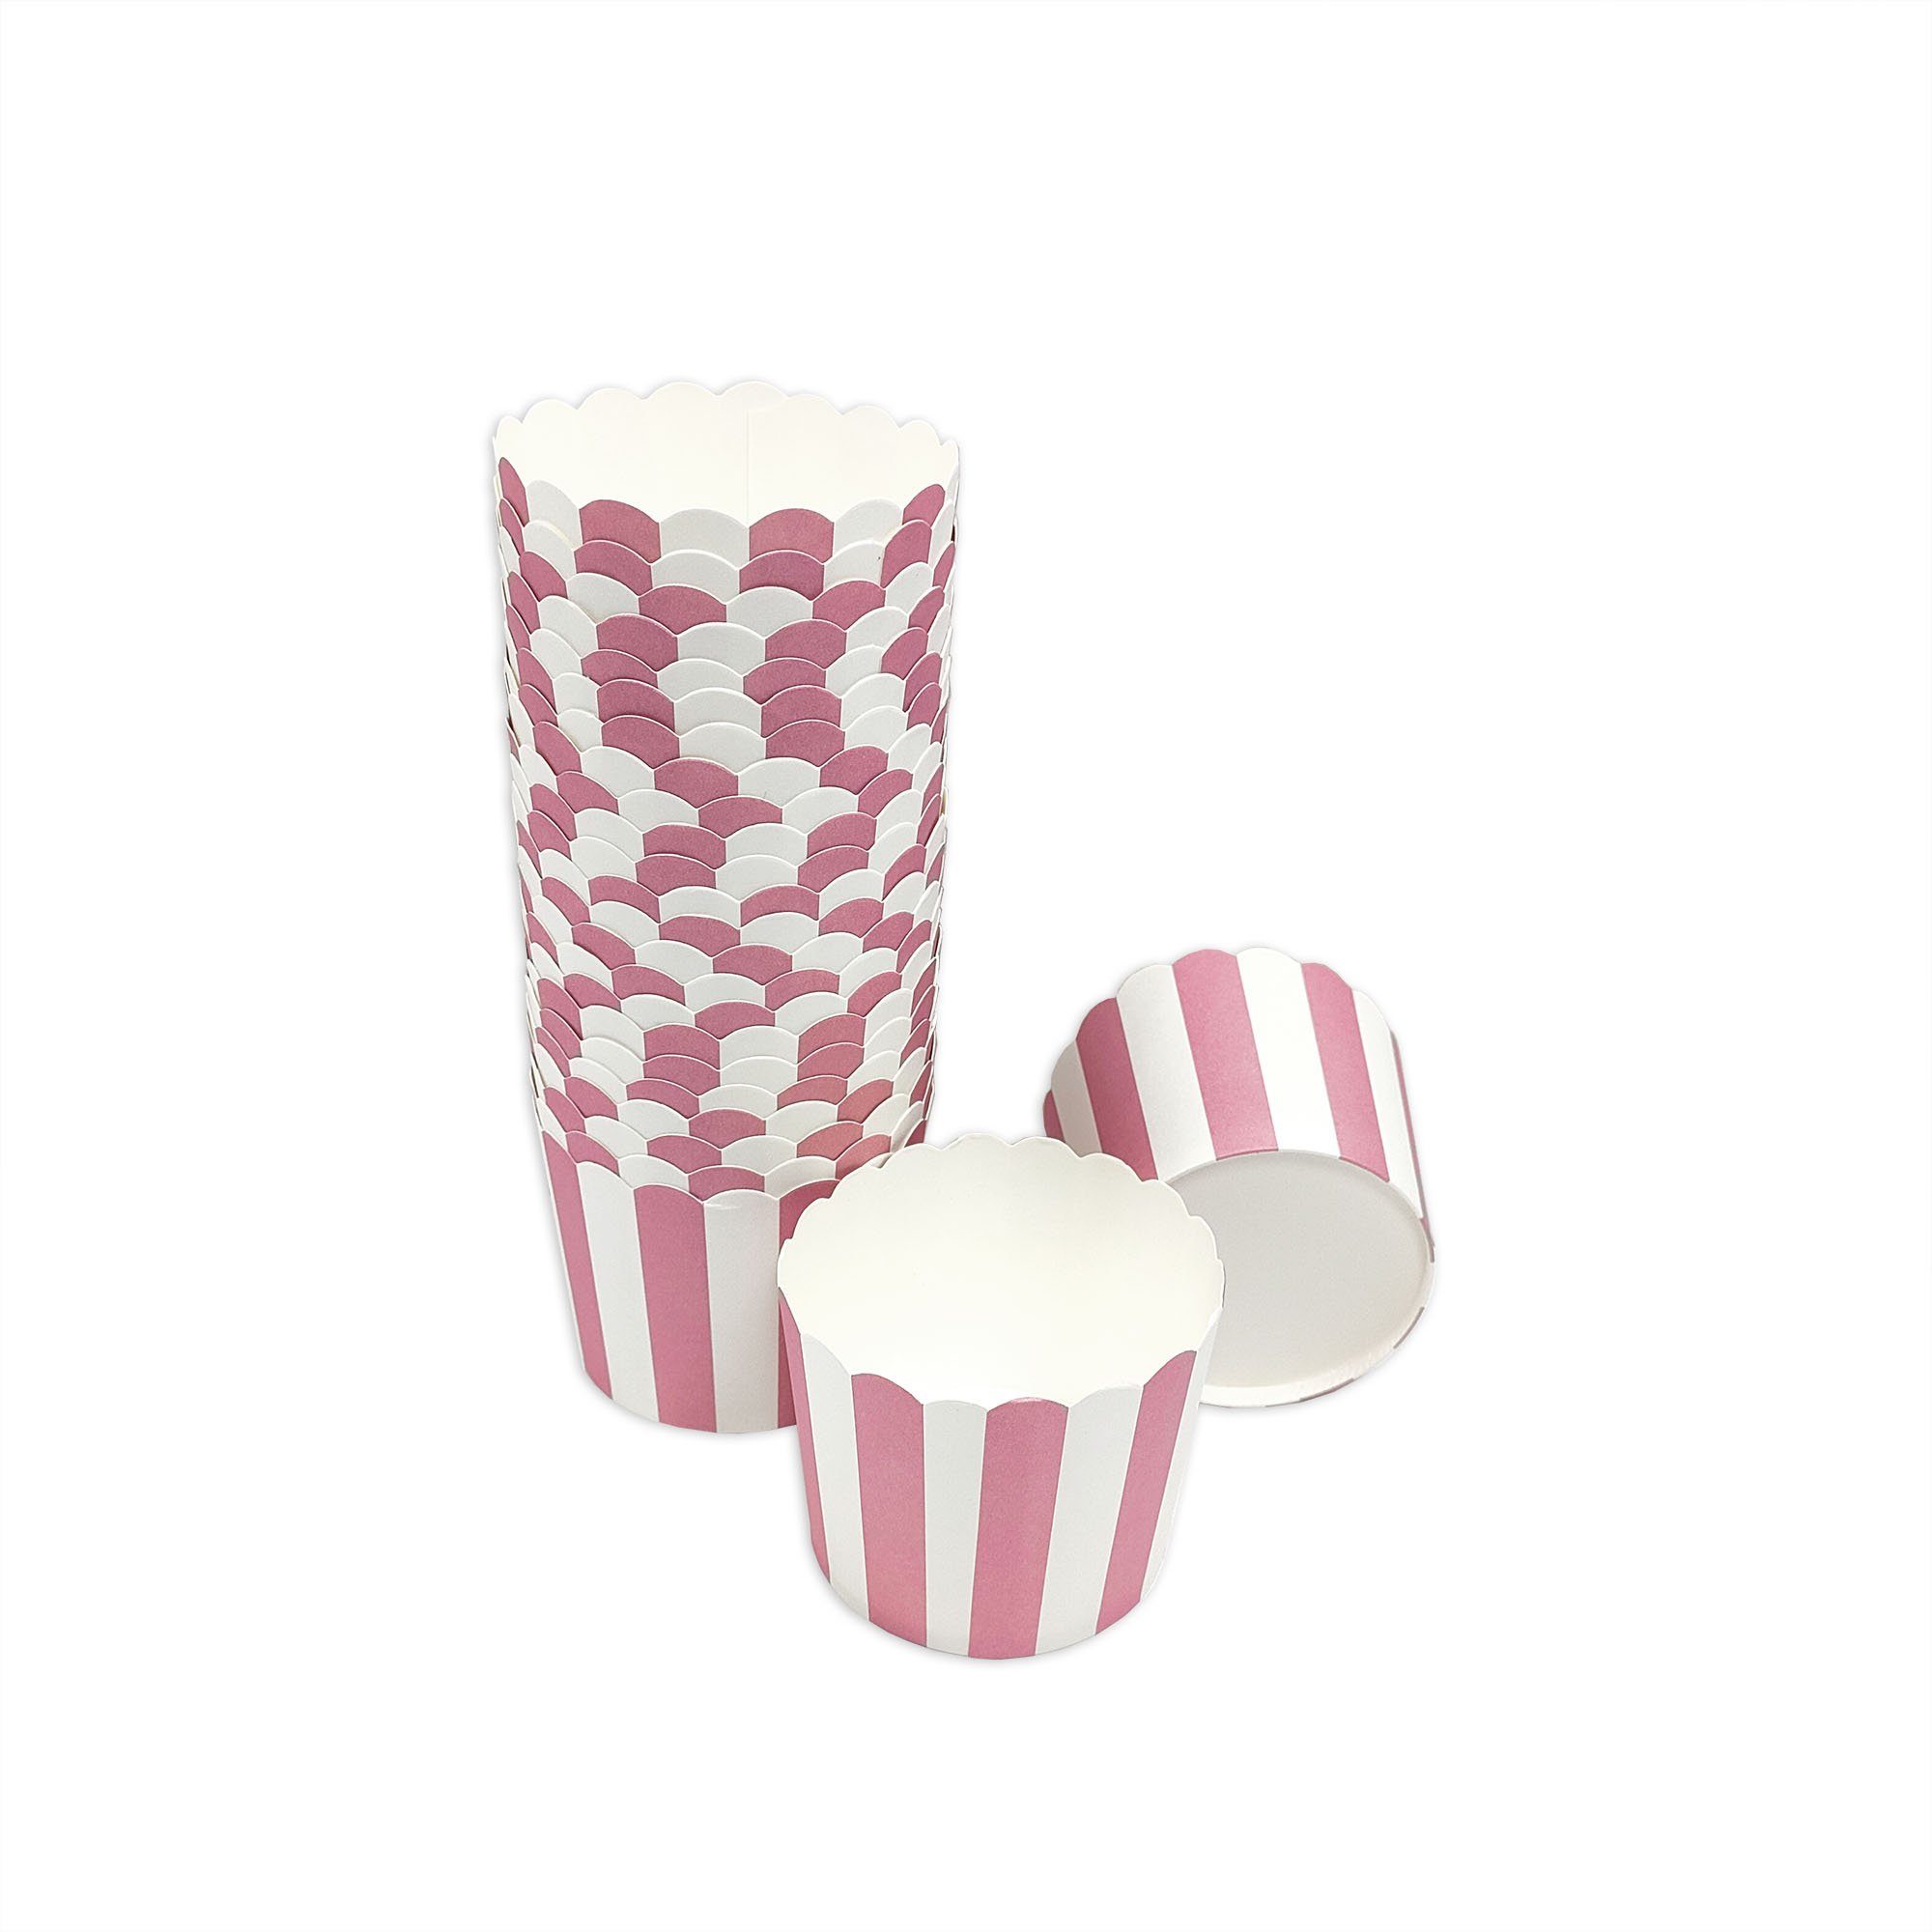 Frau WUNDERVoll Muffinform Muffin Backformen, groß Durchmesser 6,1 cm, rosa- weiße Streifen, (25-tlg)